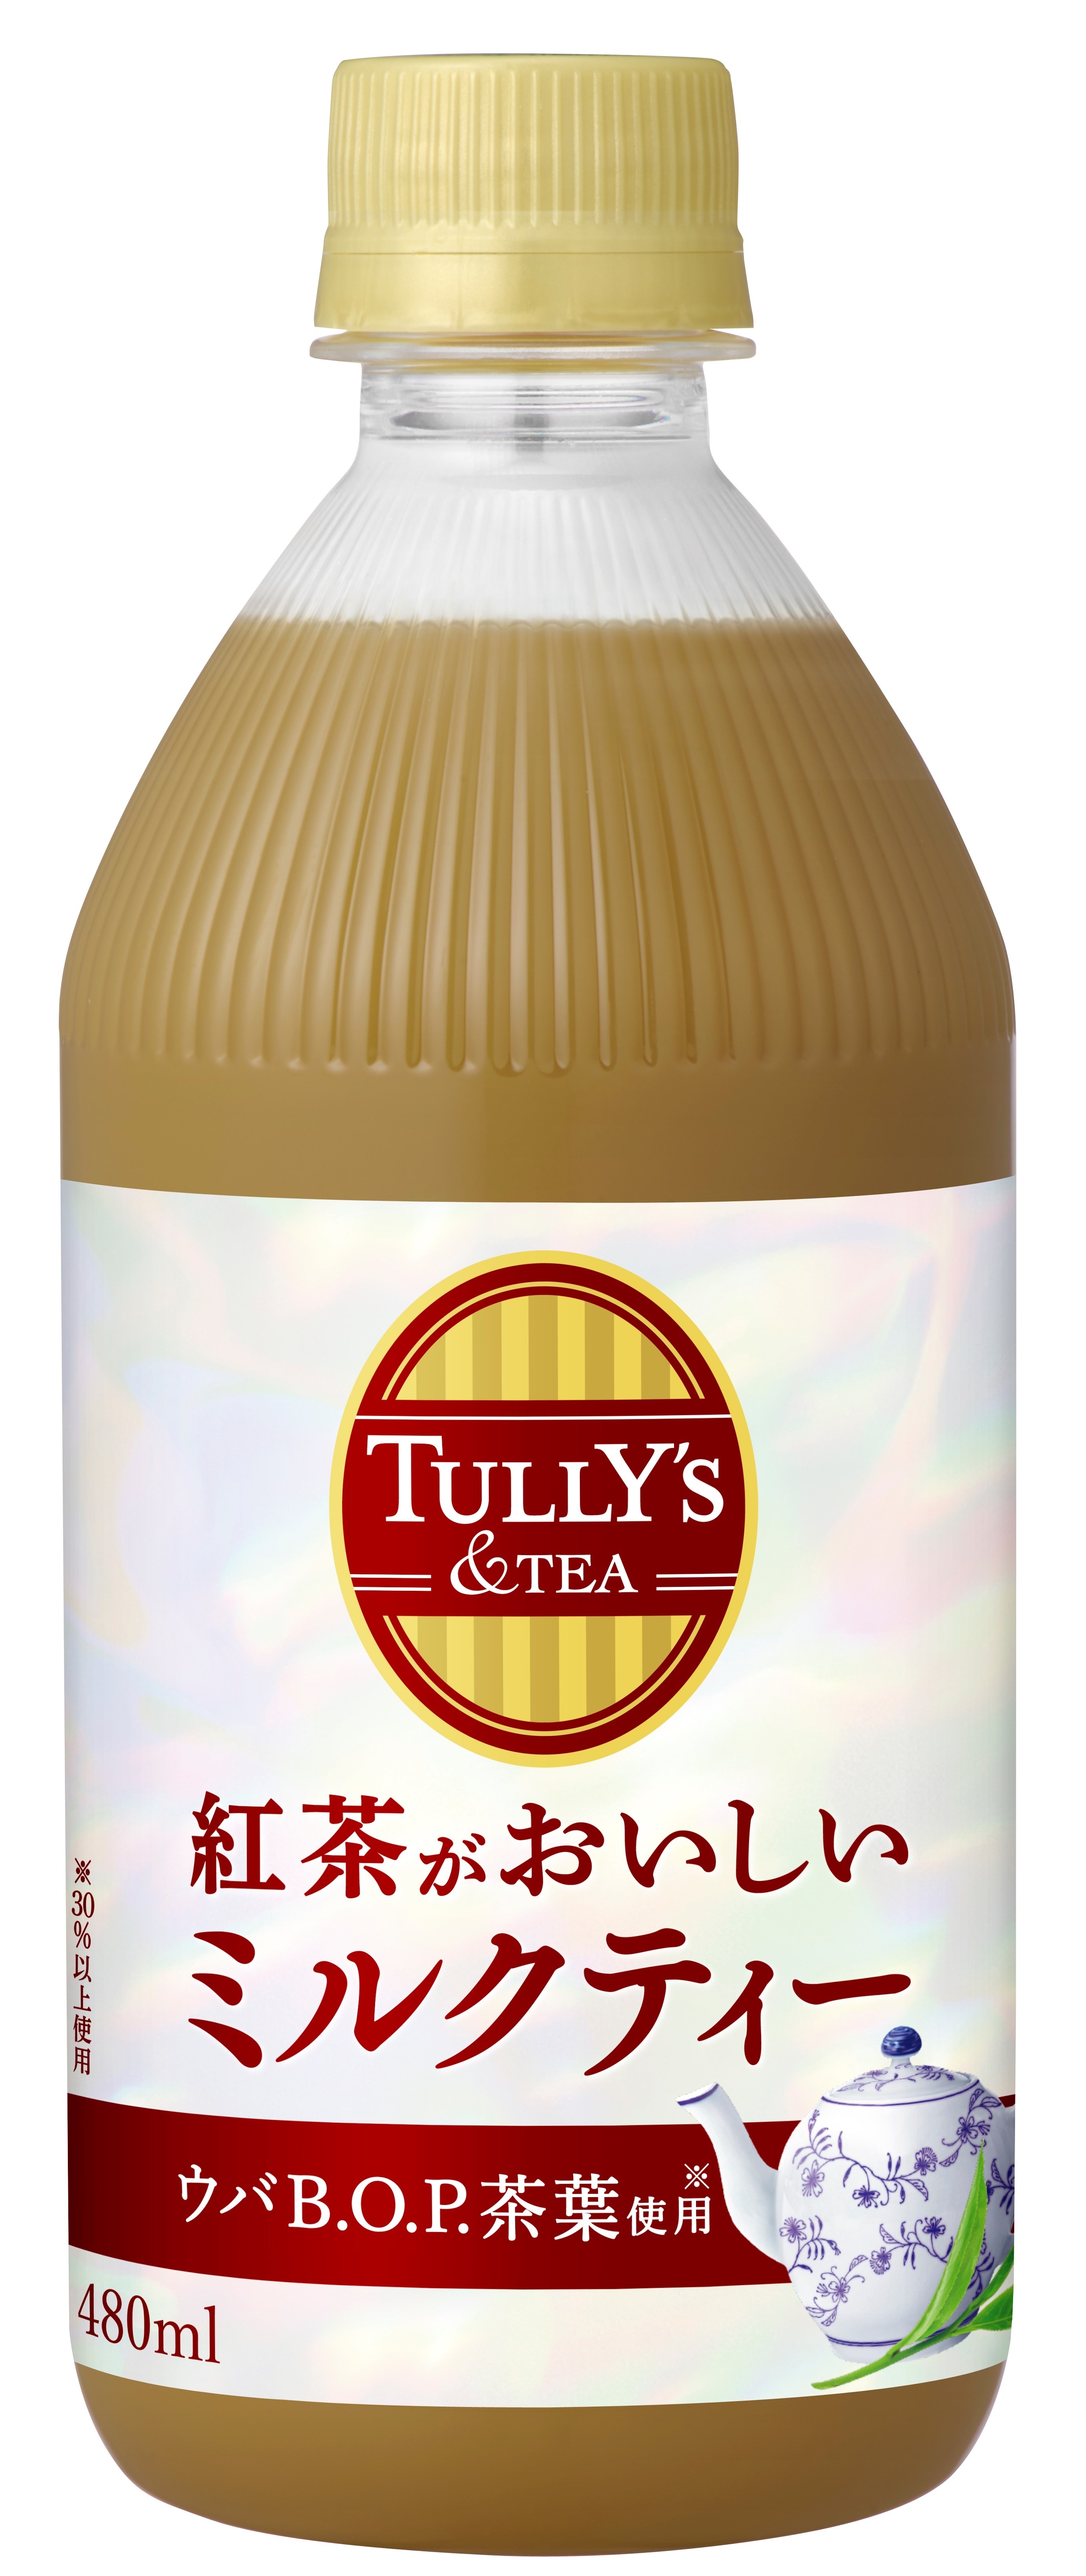 Tully S Tea 紅茶がおいしいミルクティー 8月8日 月 新発売 あわせて Tully S Tea Twitterキャンペーンを7月12日 火 より実施 株式会社伊藤園のプレスリリース